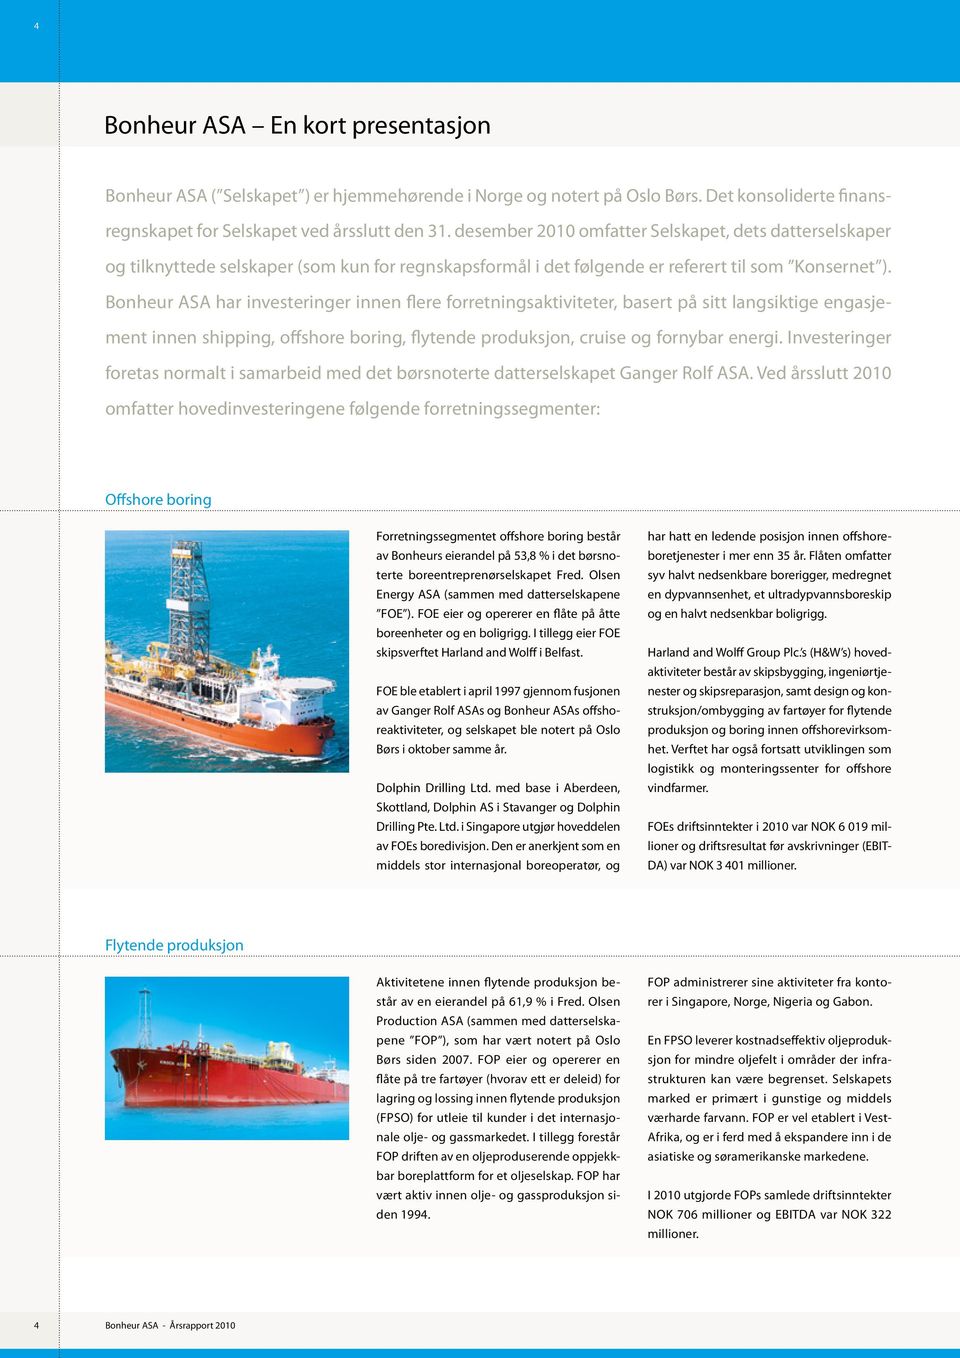 Bonheur ASA har investeringer innen flere forretningsaktiviteter, basert på sitt langsiktige engasjement innen shipping, offshore boring, flytende produksjon, cruise og fornybar energi.